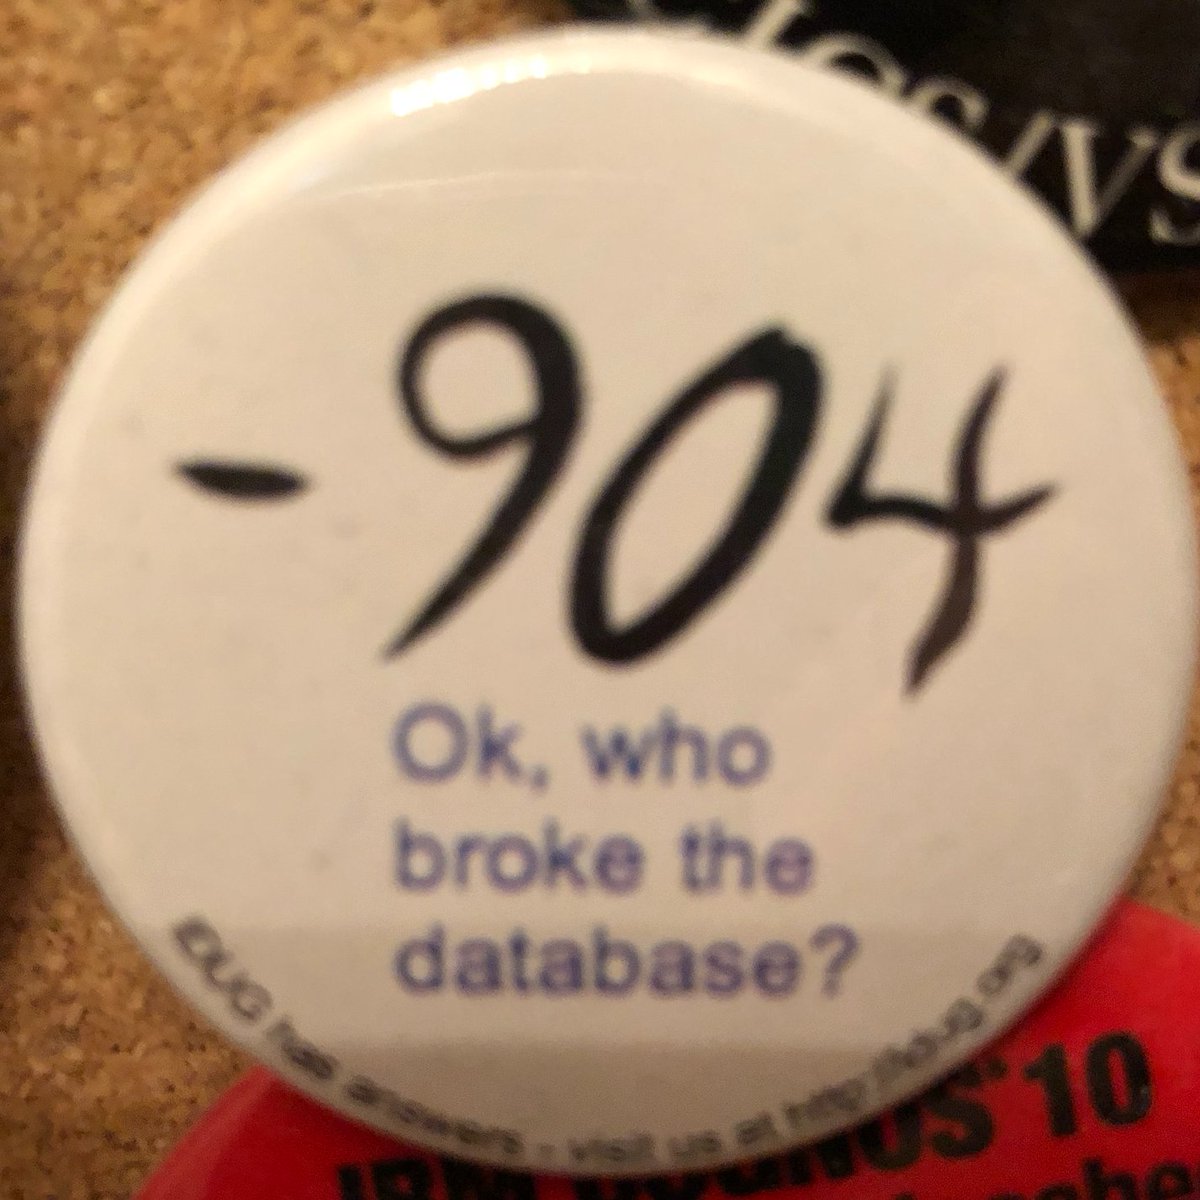 OK, who broke the database? -904 #badgeoftheday